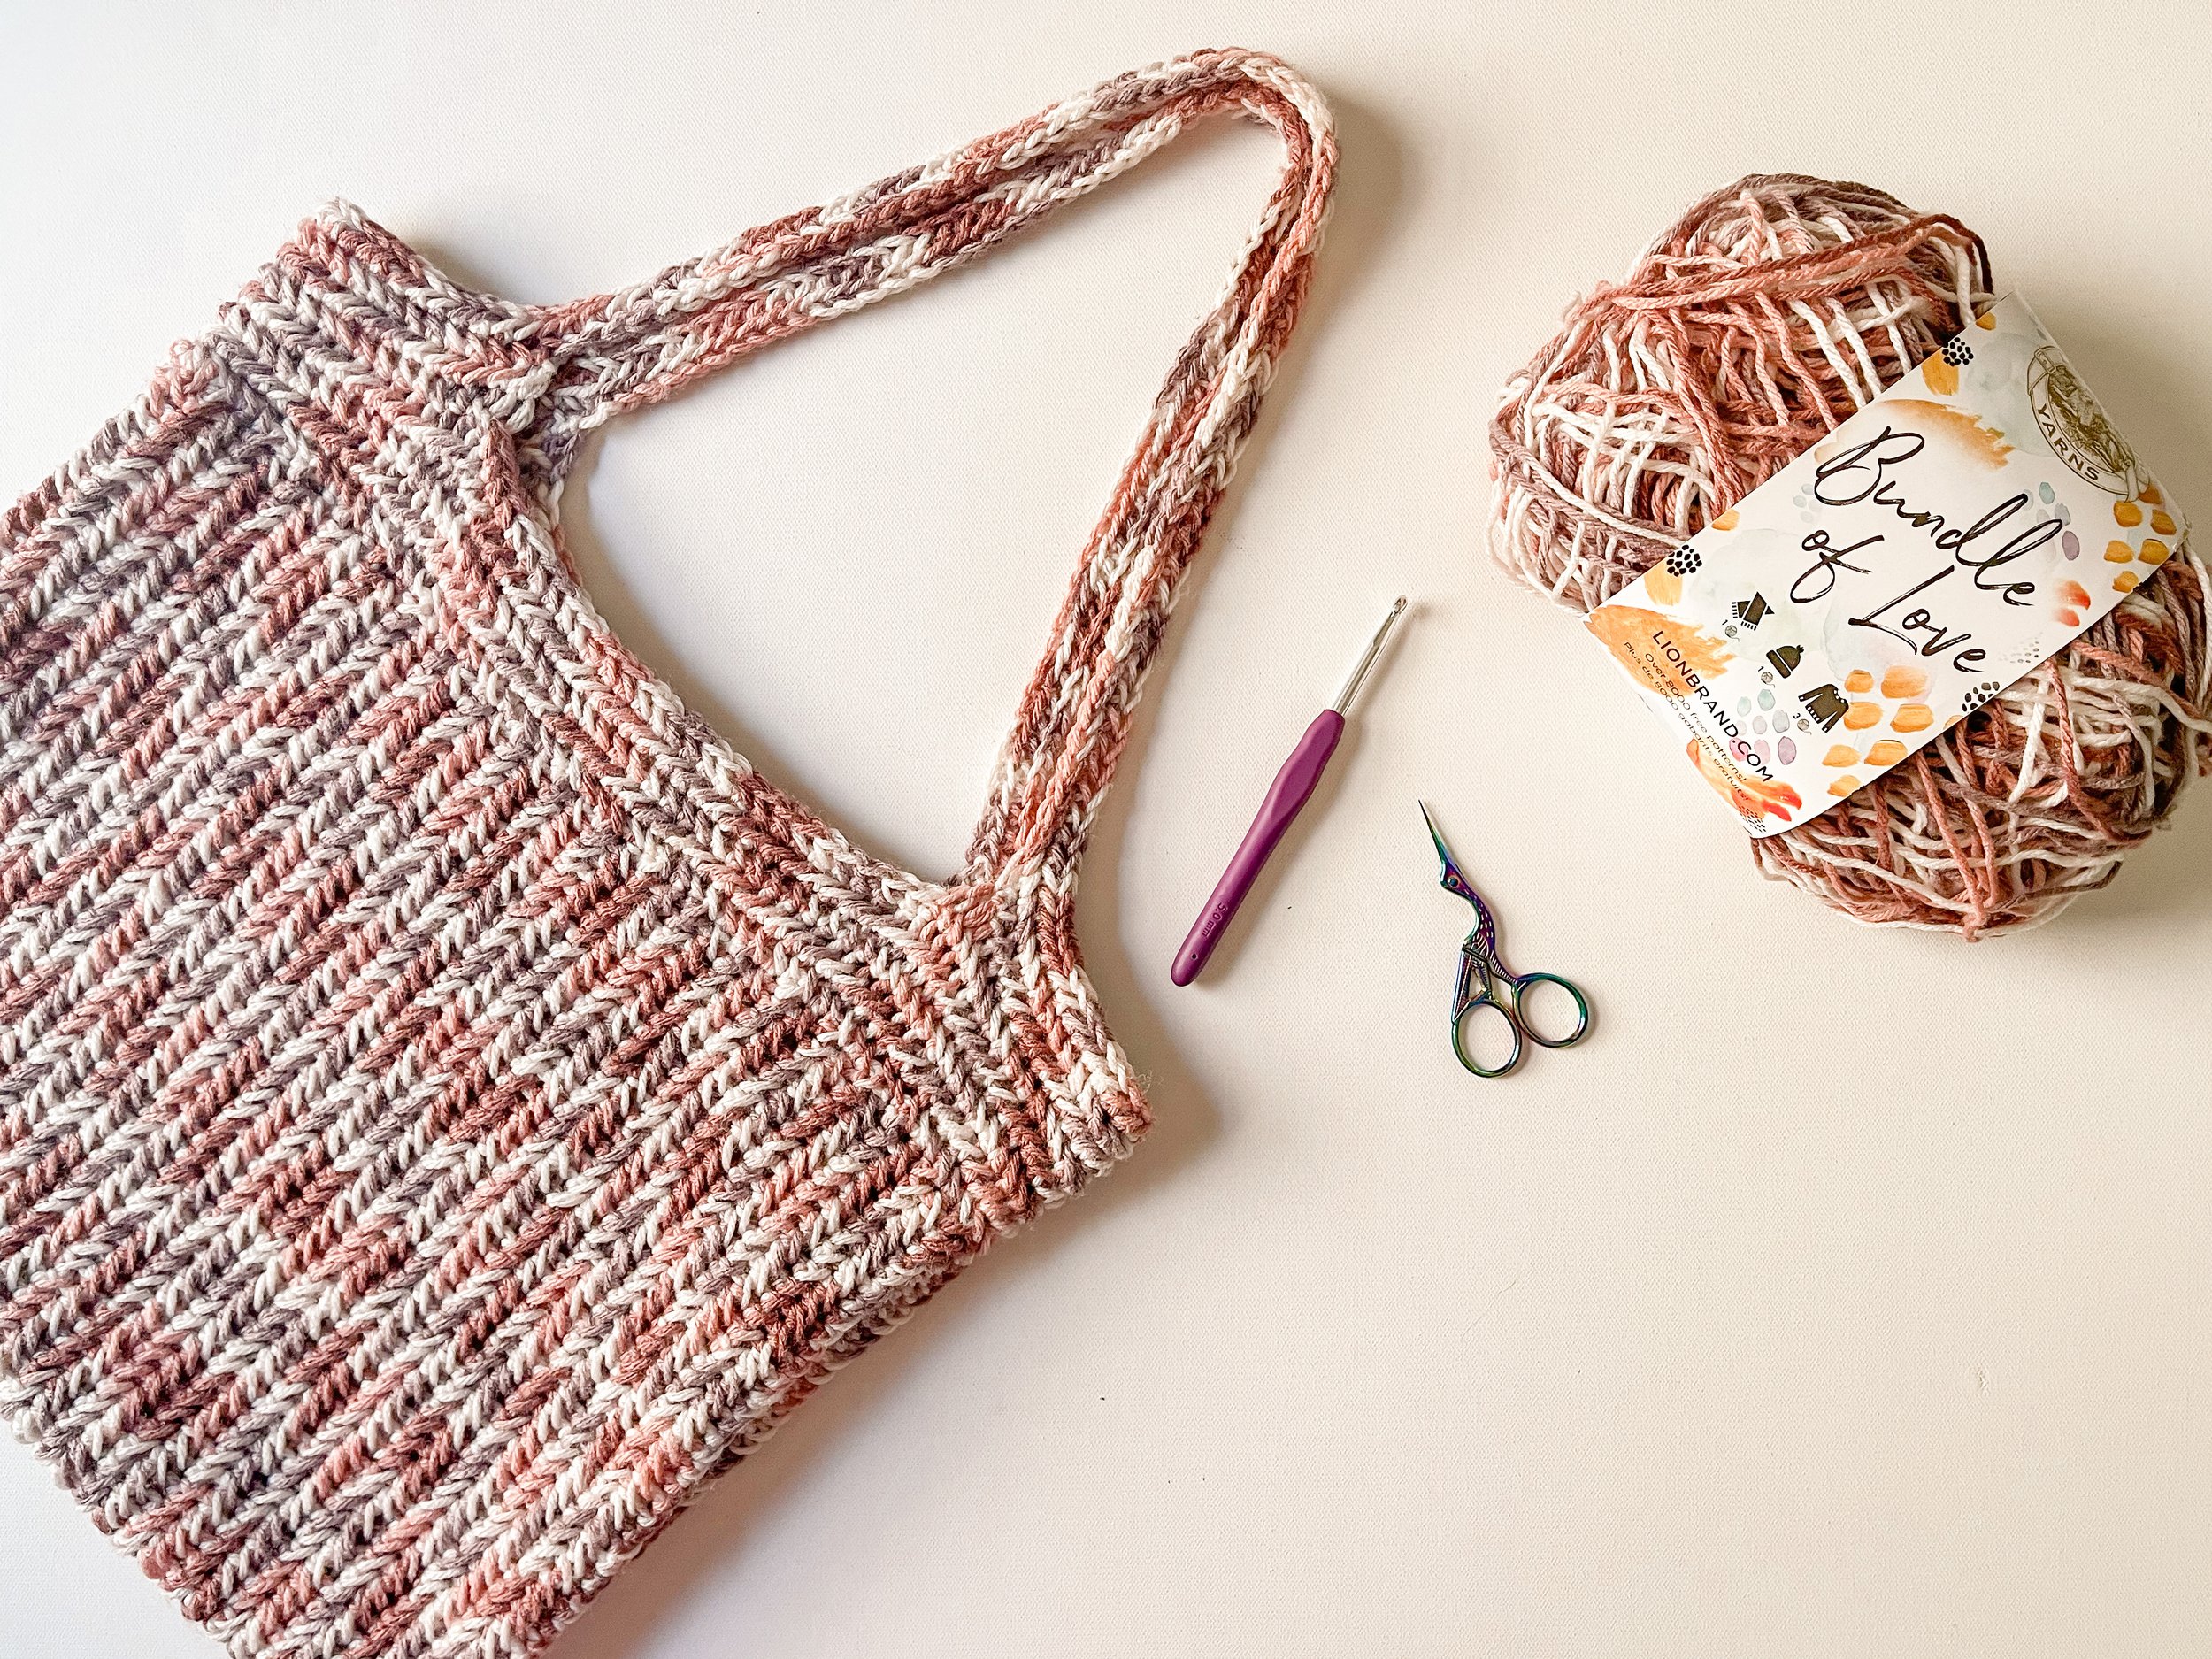 Crochet Bucket Bag - Free Crochet Bag Pattern In 2 Options